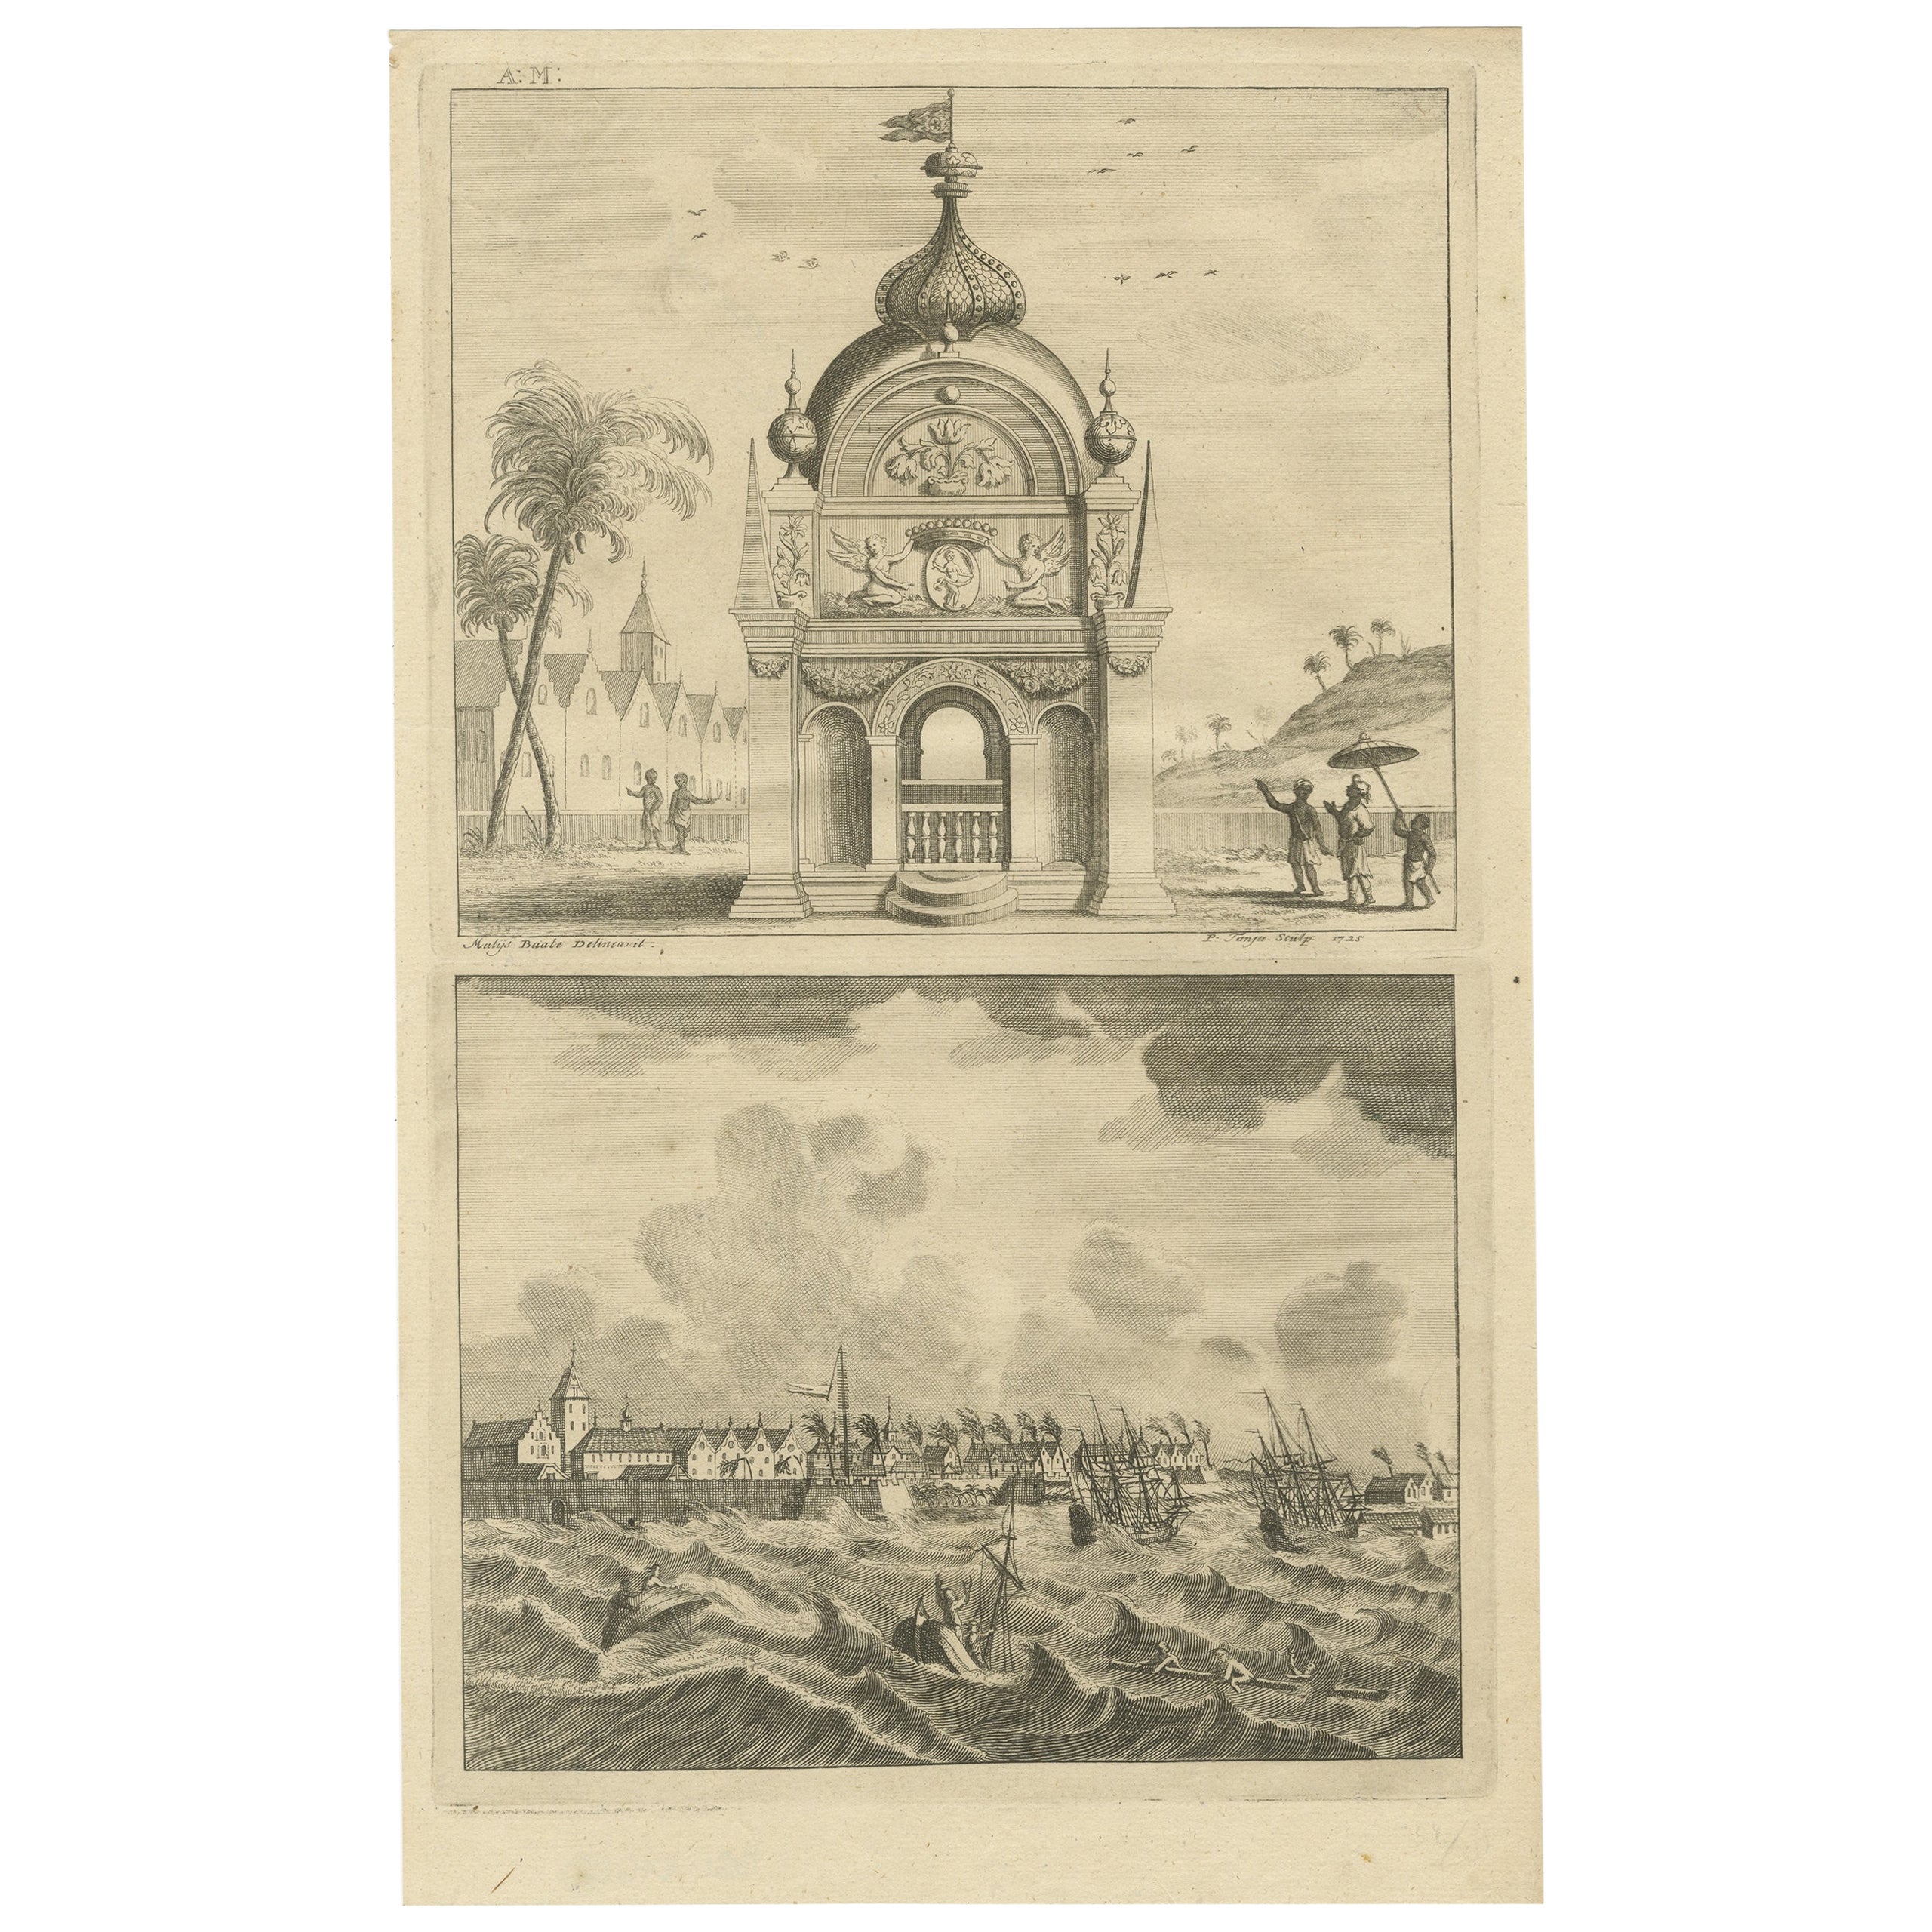 Antique Print of the Coromandel Coast in India, 1726